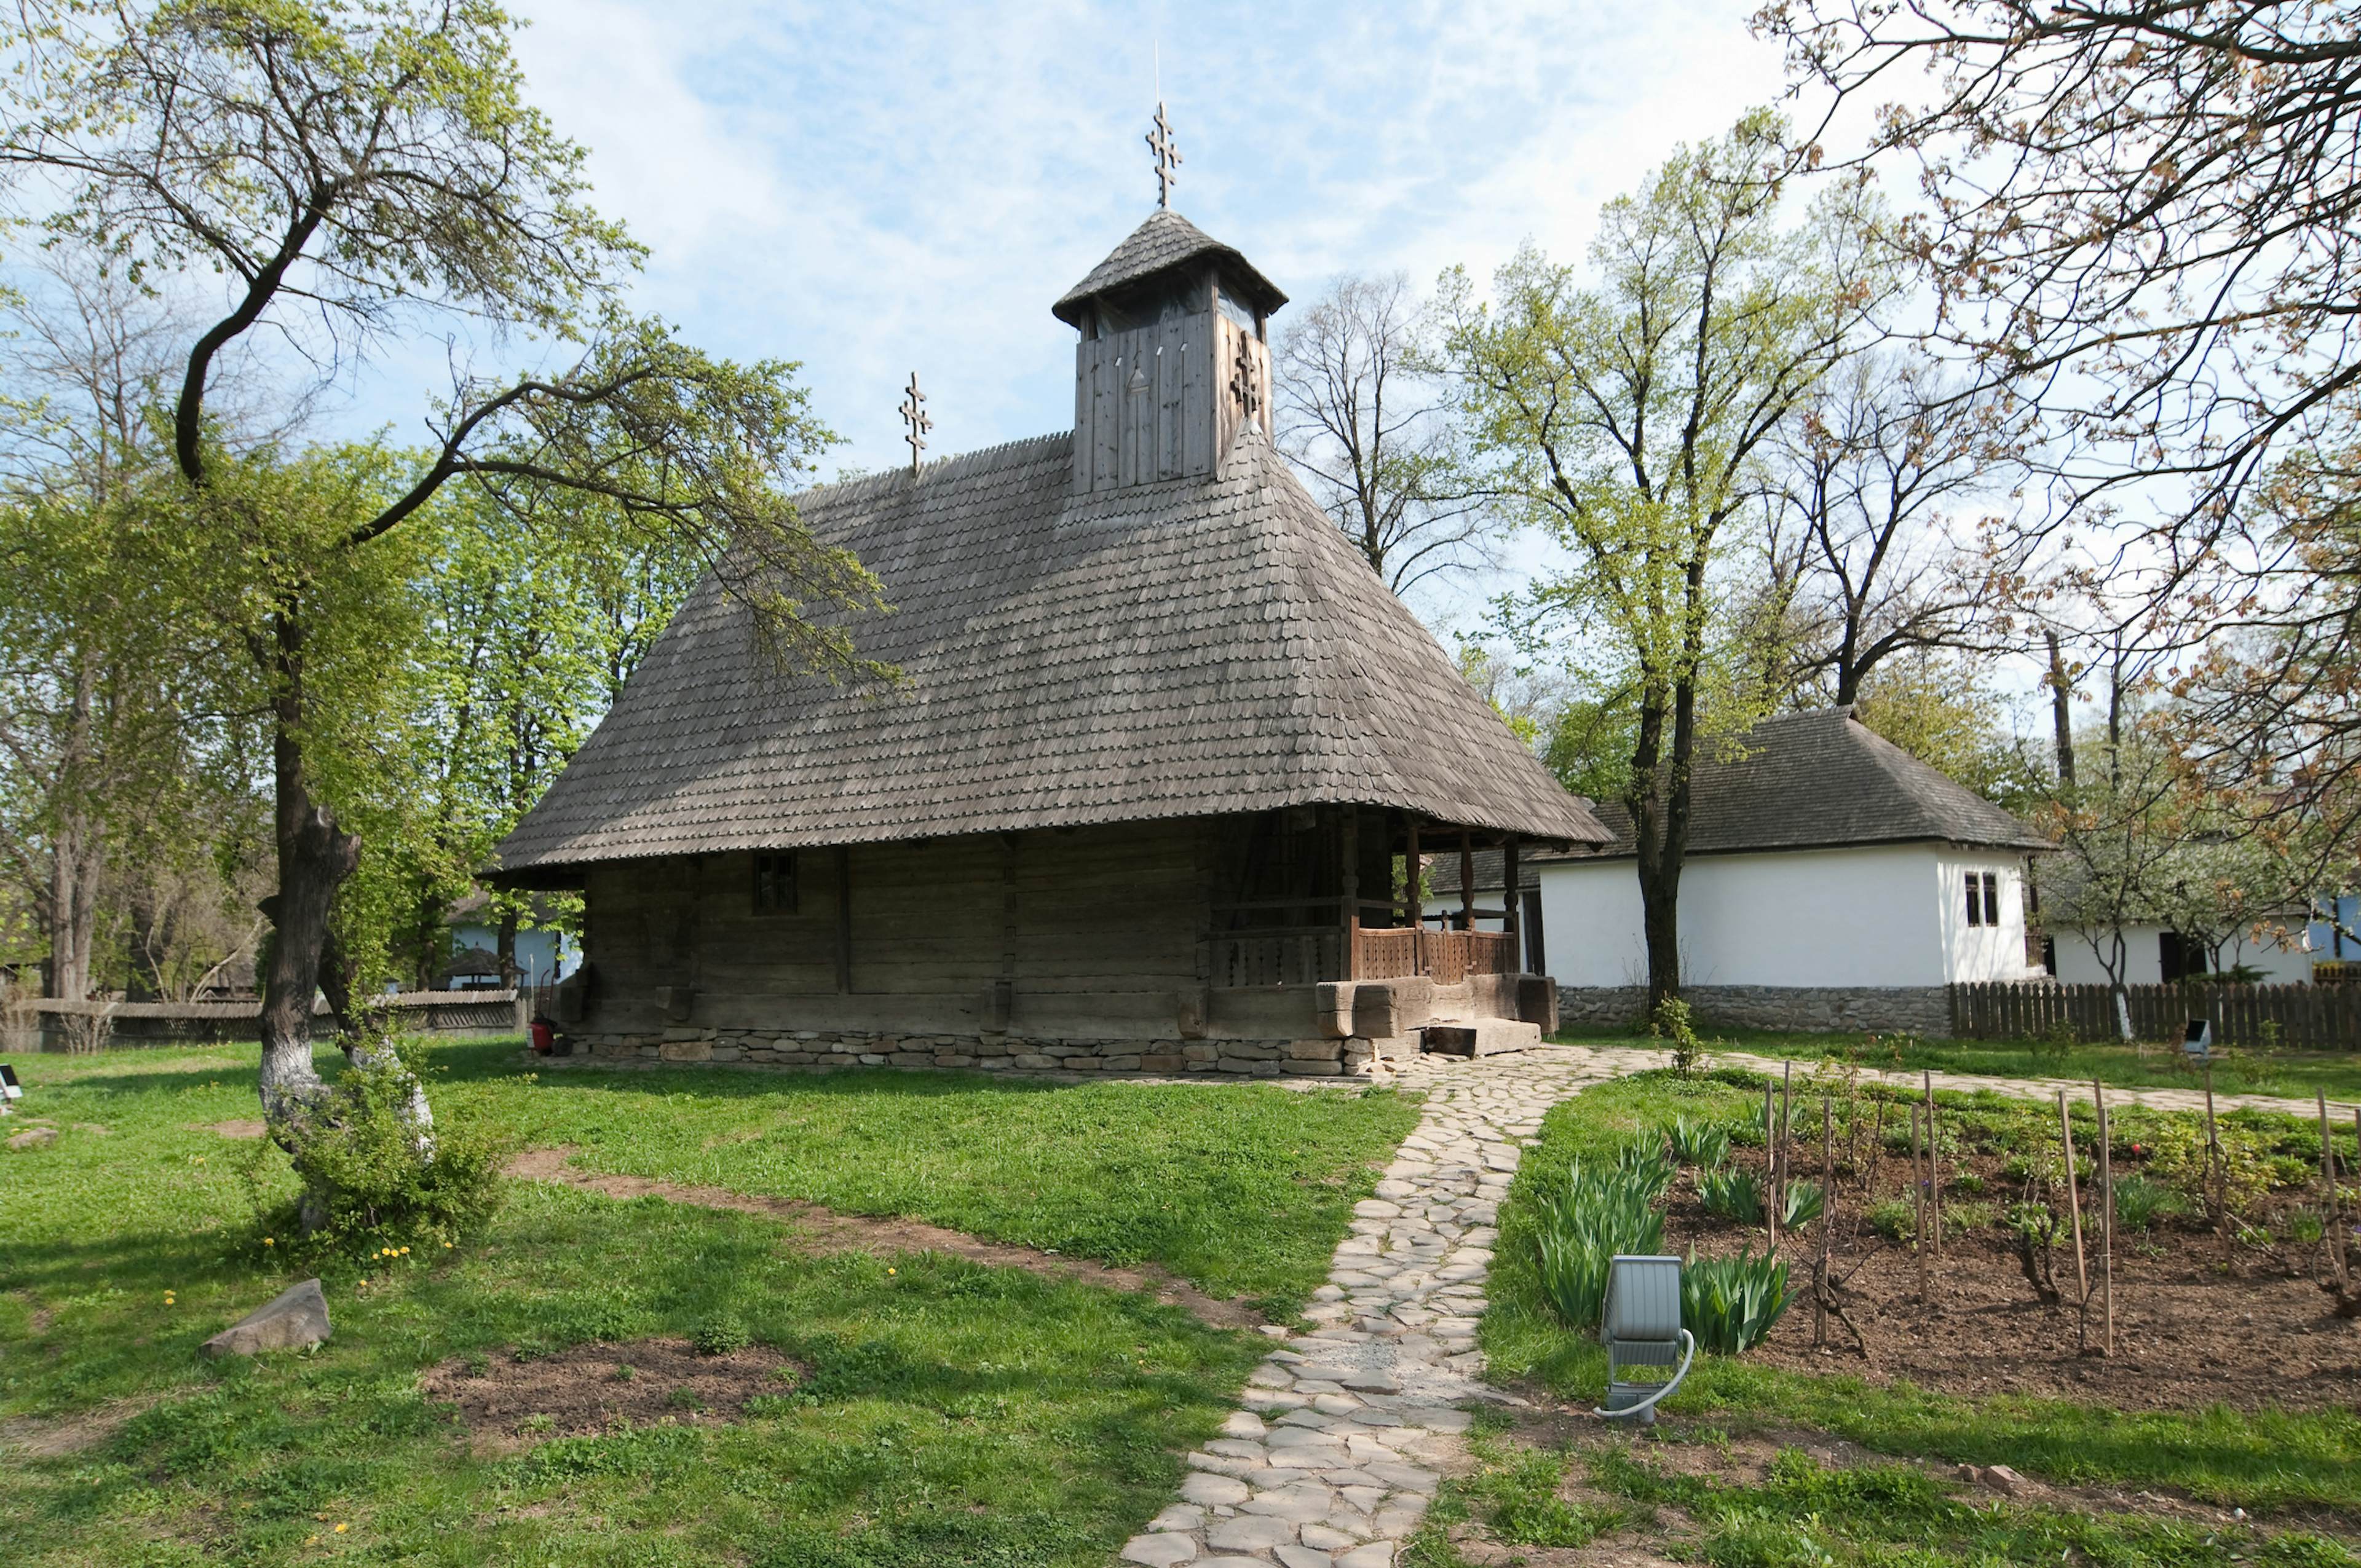 Muzeul Satului Dimitrie Gusti Bucuresti (Village Museum)